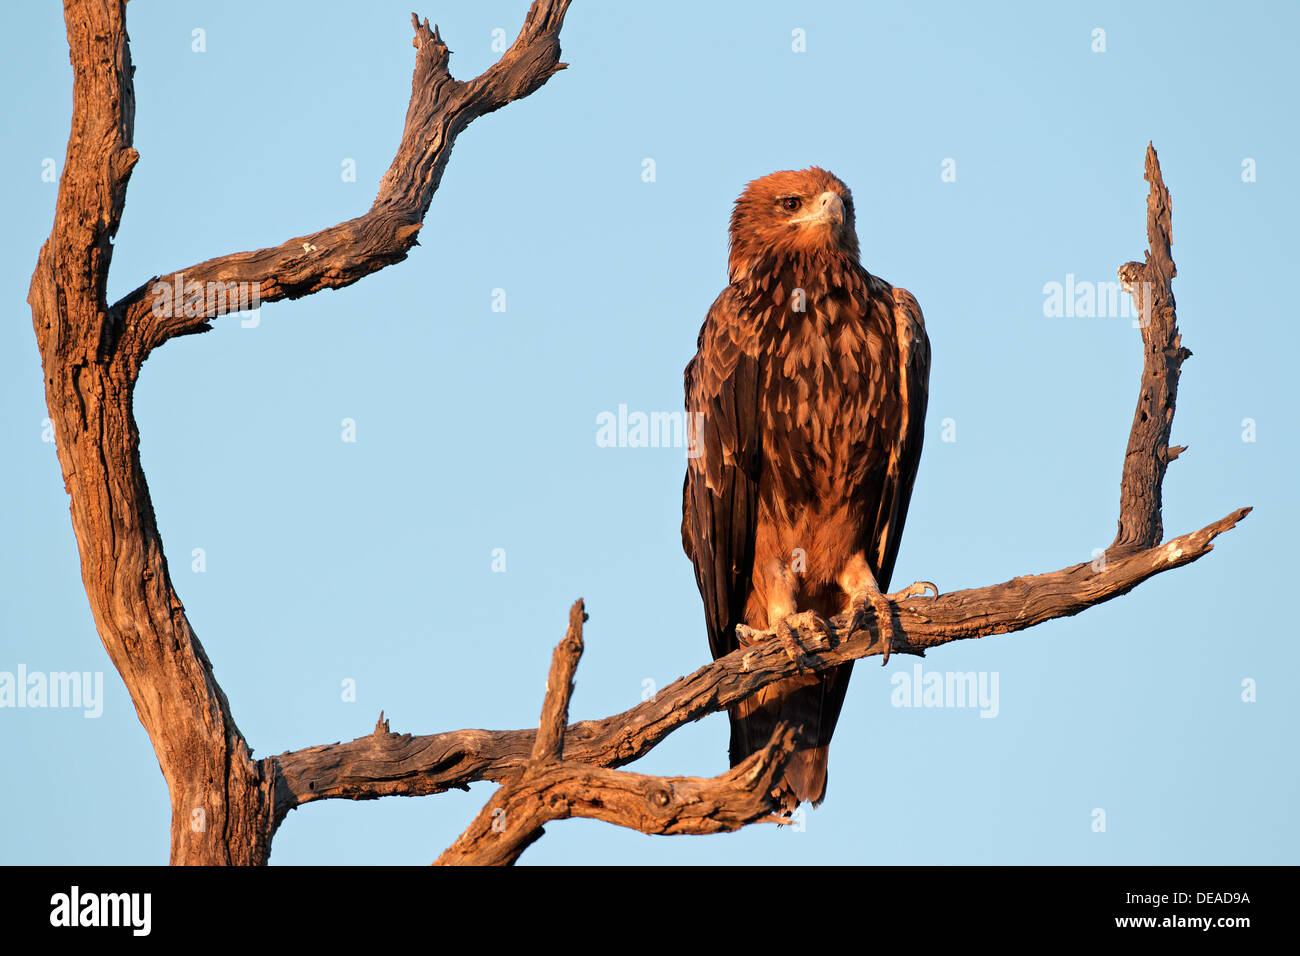 Aigle (Aquila rapax) perché sur une branche, Kalahari, Afrique du Sud Banque D'Images